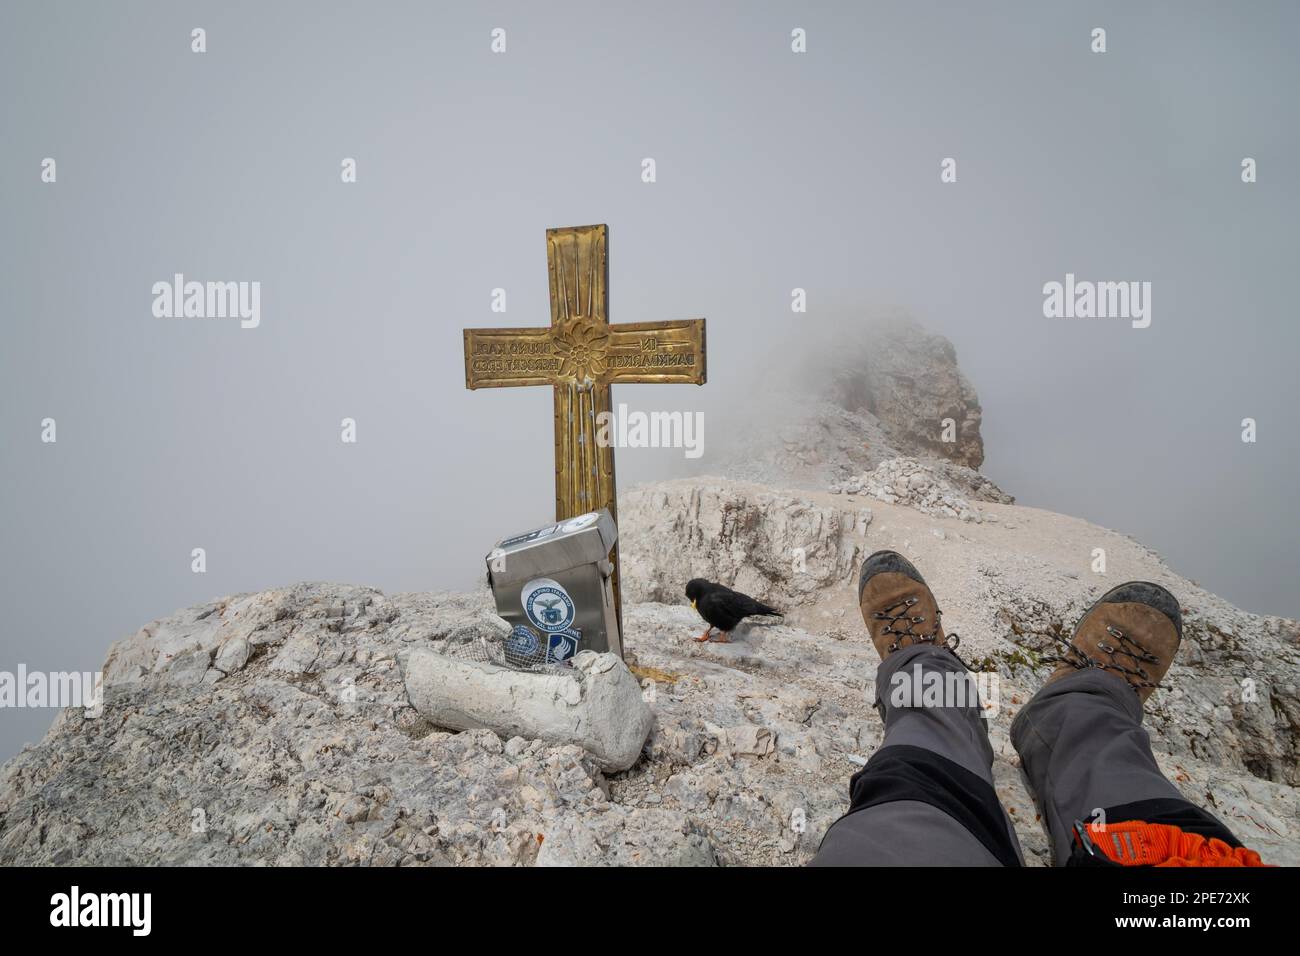 Vue cachée par les nuages du sommet de Cima di Mezzo (3154 m) . Le touriste se repose avec l'oiseau qui l'accompagne., Dolomites, Italie, Europe Banque D'Images